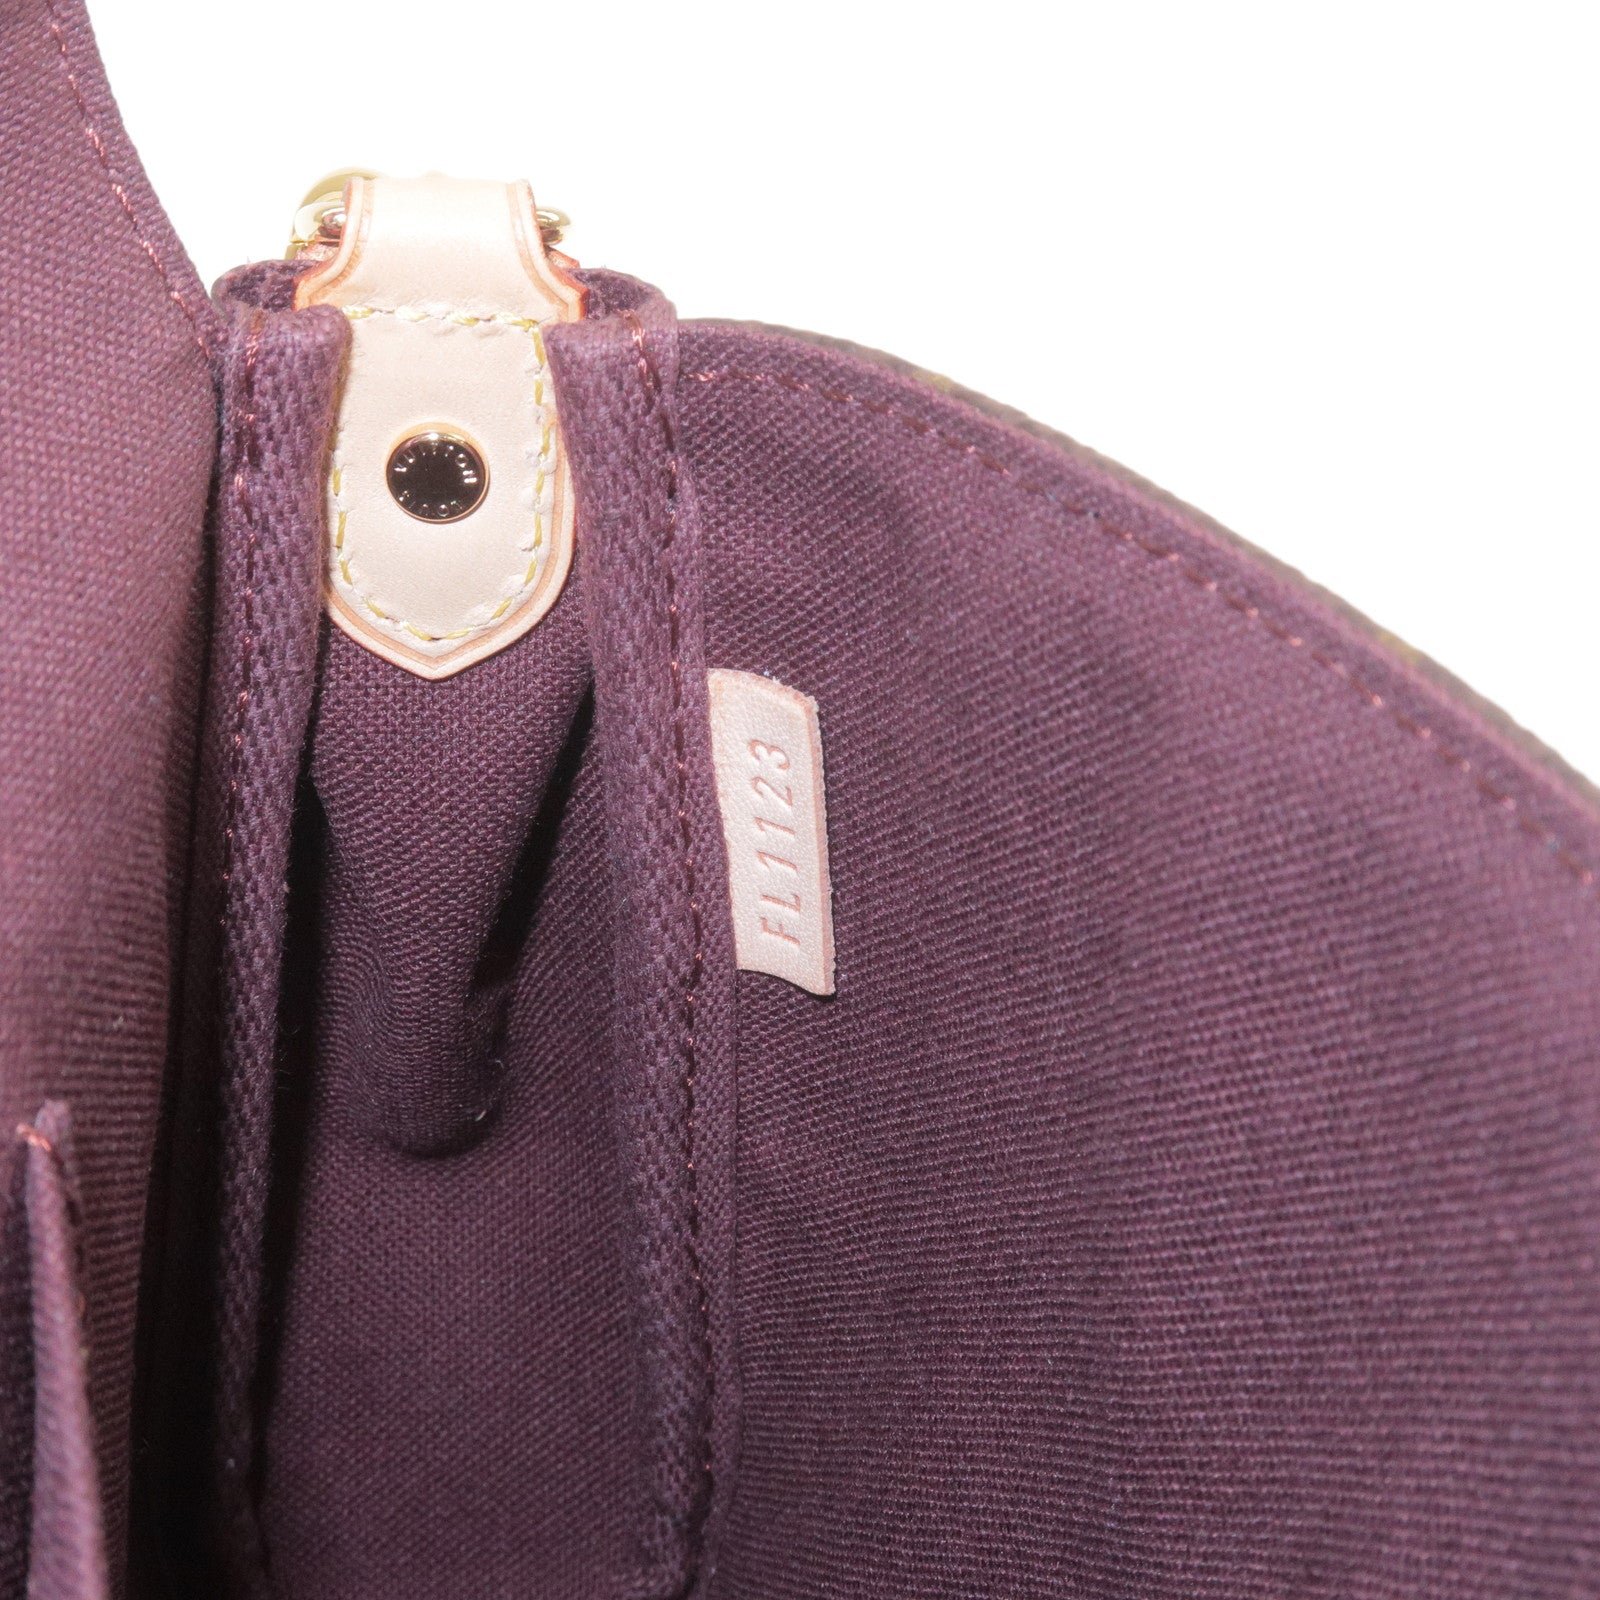 LV M40718 Favorite MM Shoulder Bag  Favorite mm, Favorite, Fashion handbags